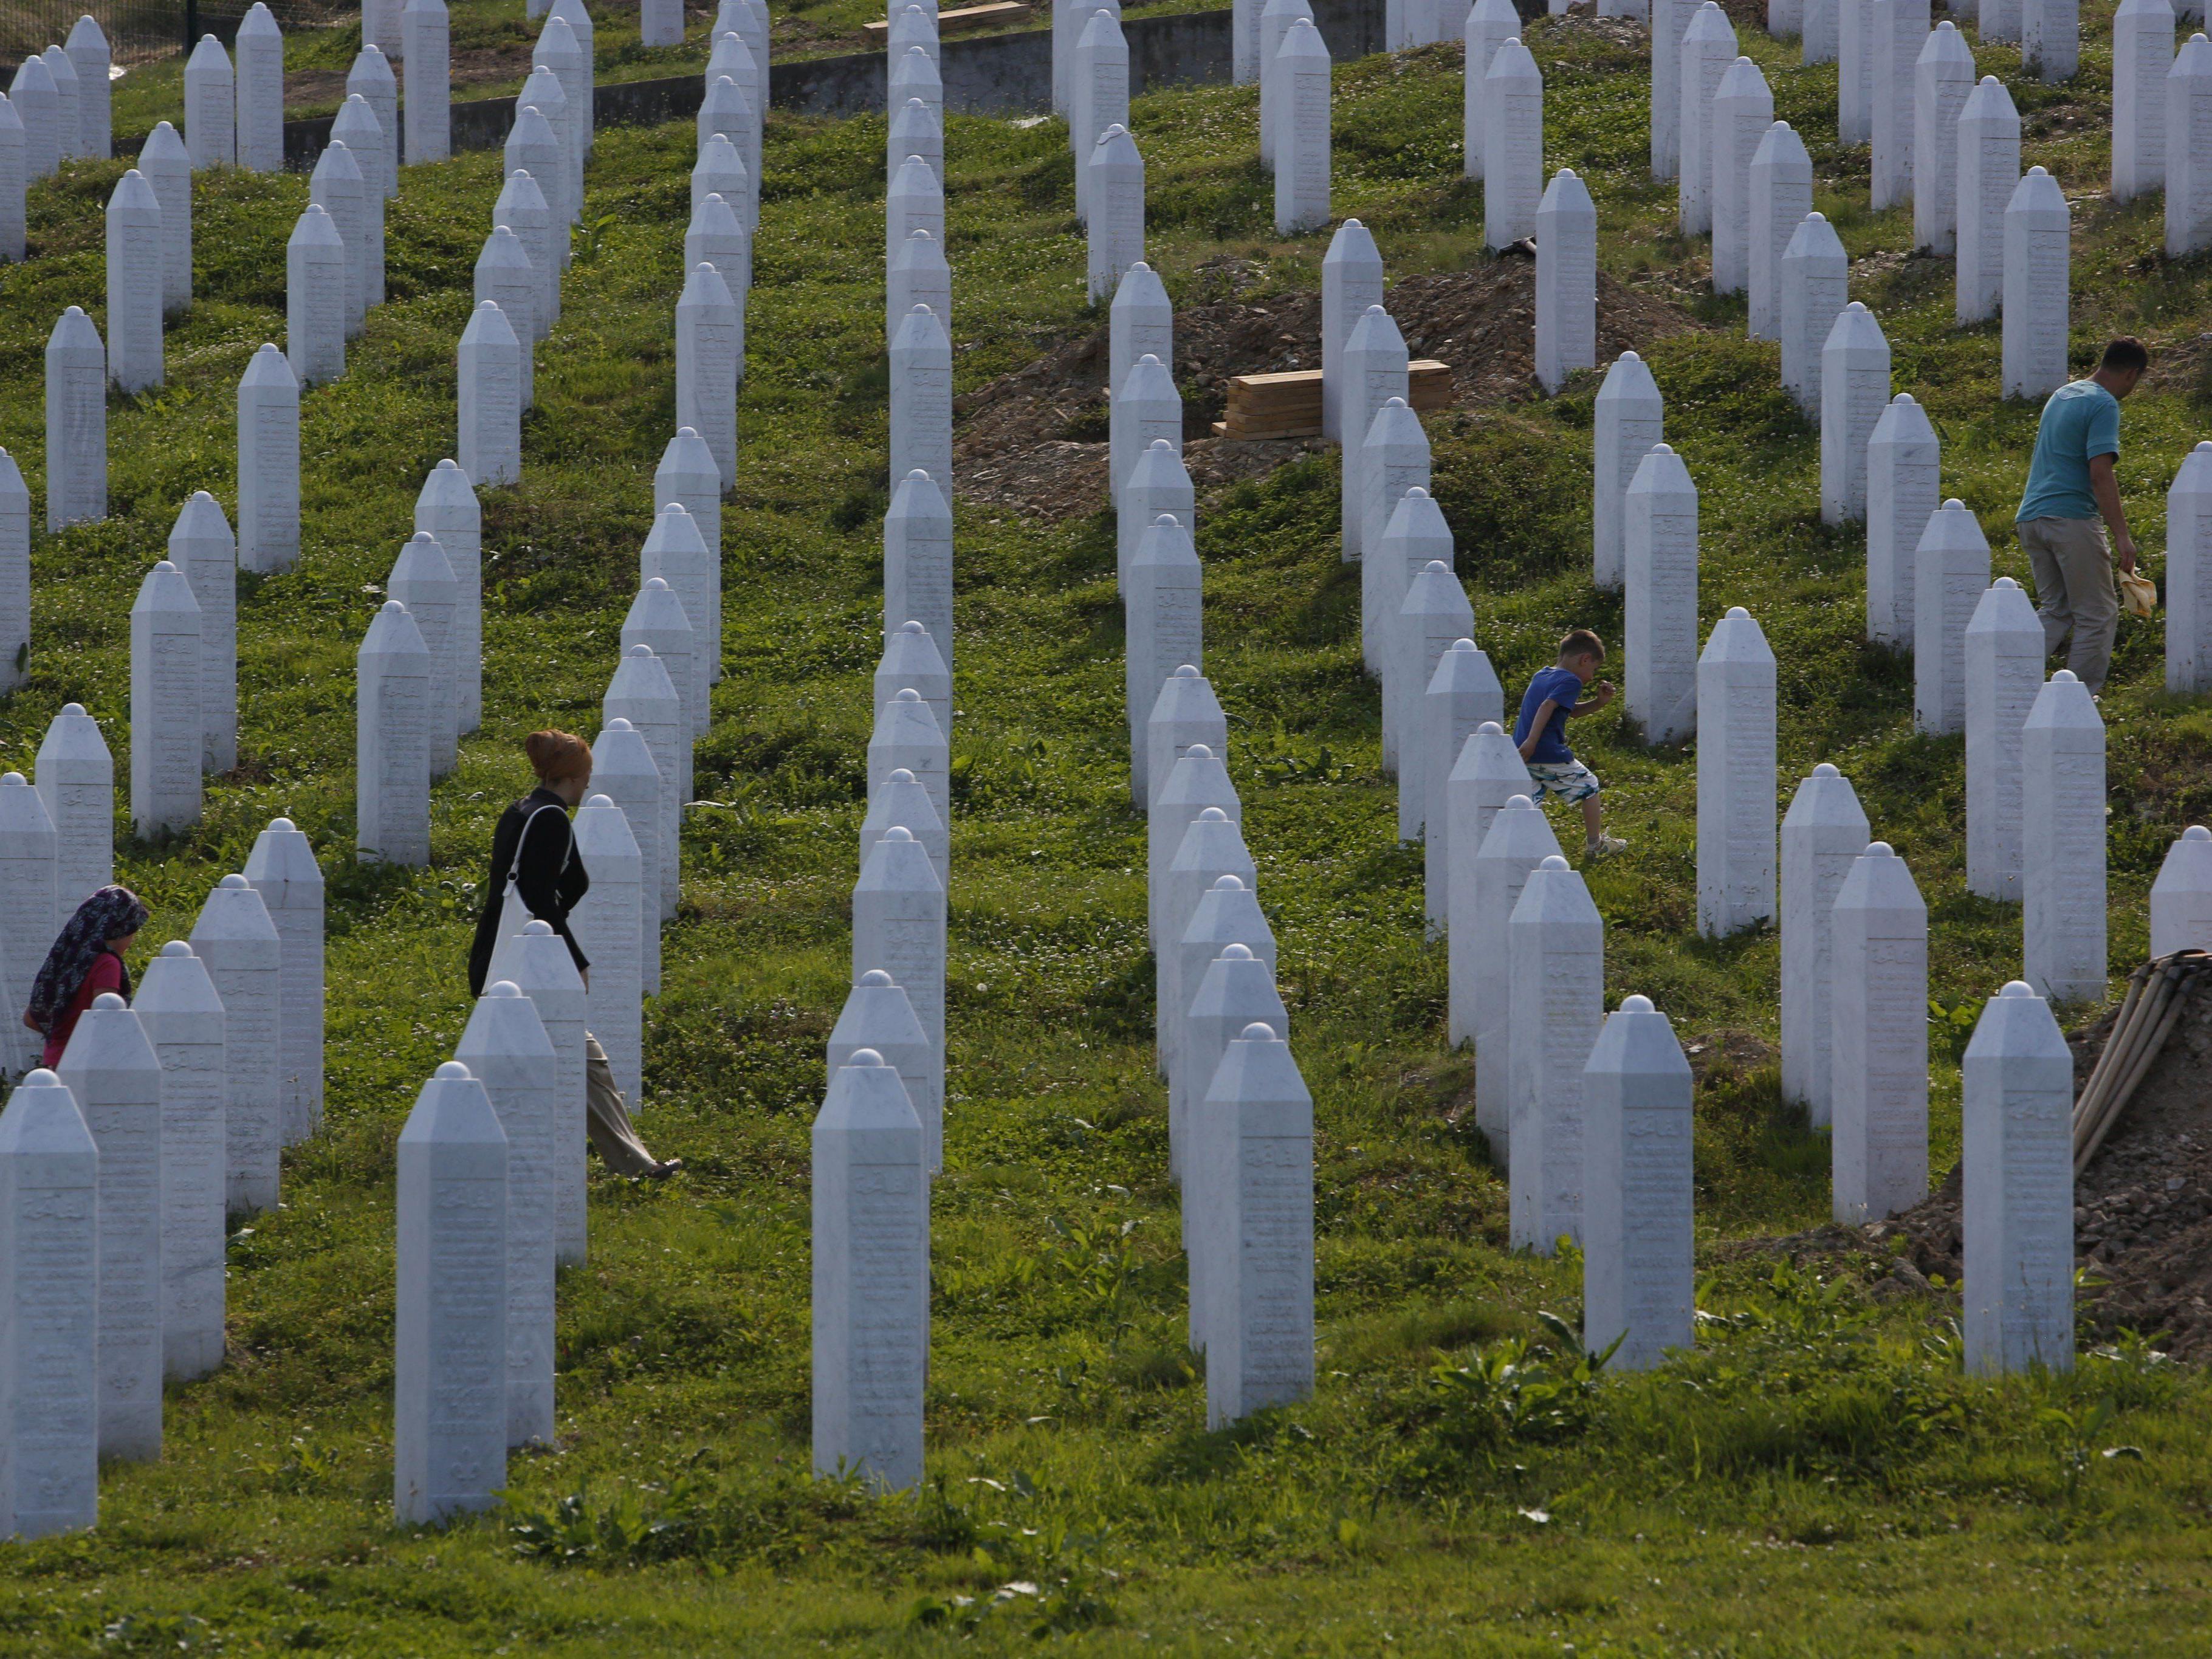 Am 11. Juli sollen in Potocari weitere 135 Opfer beigesetzt werden.